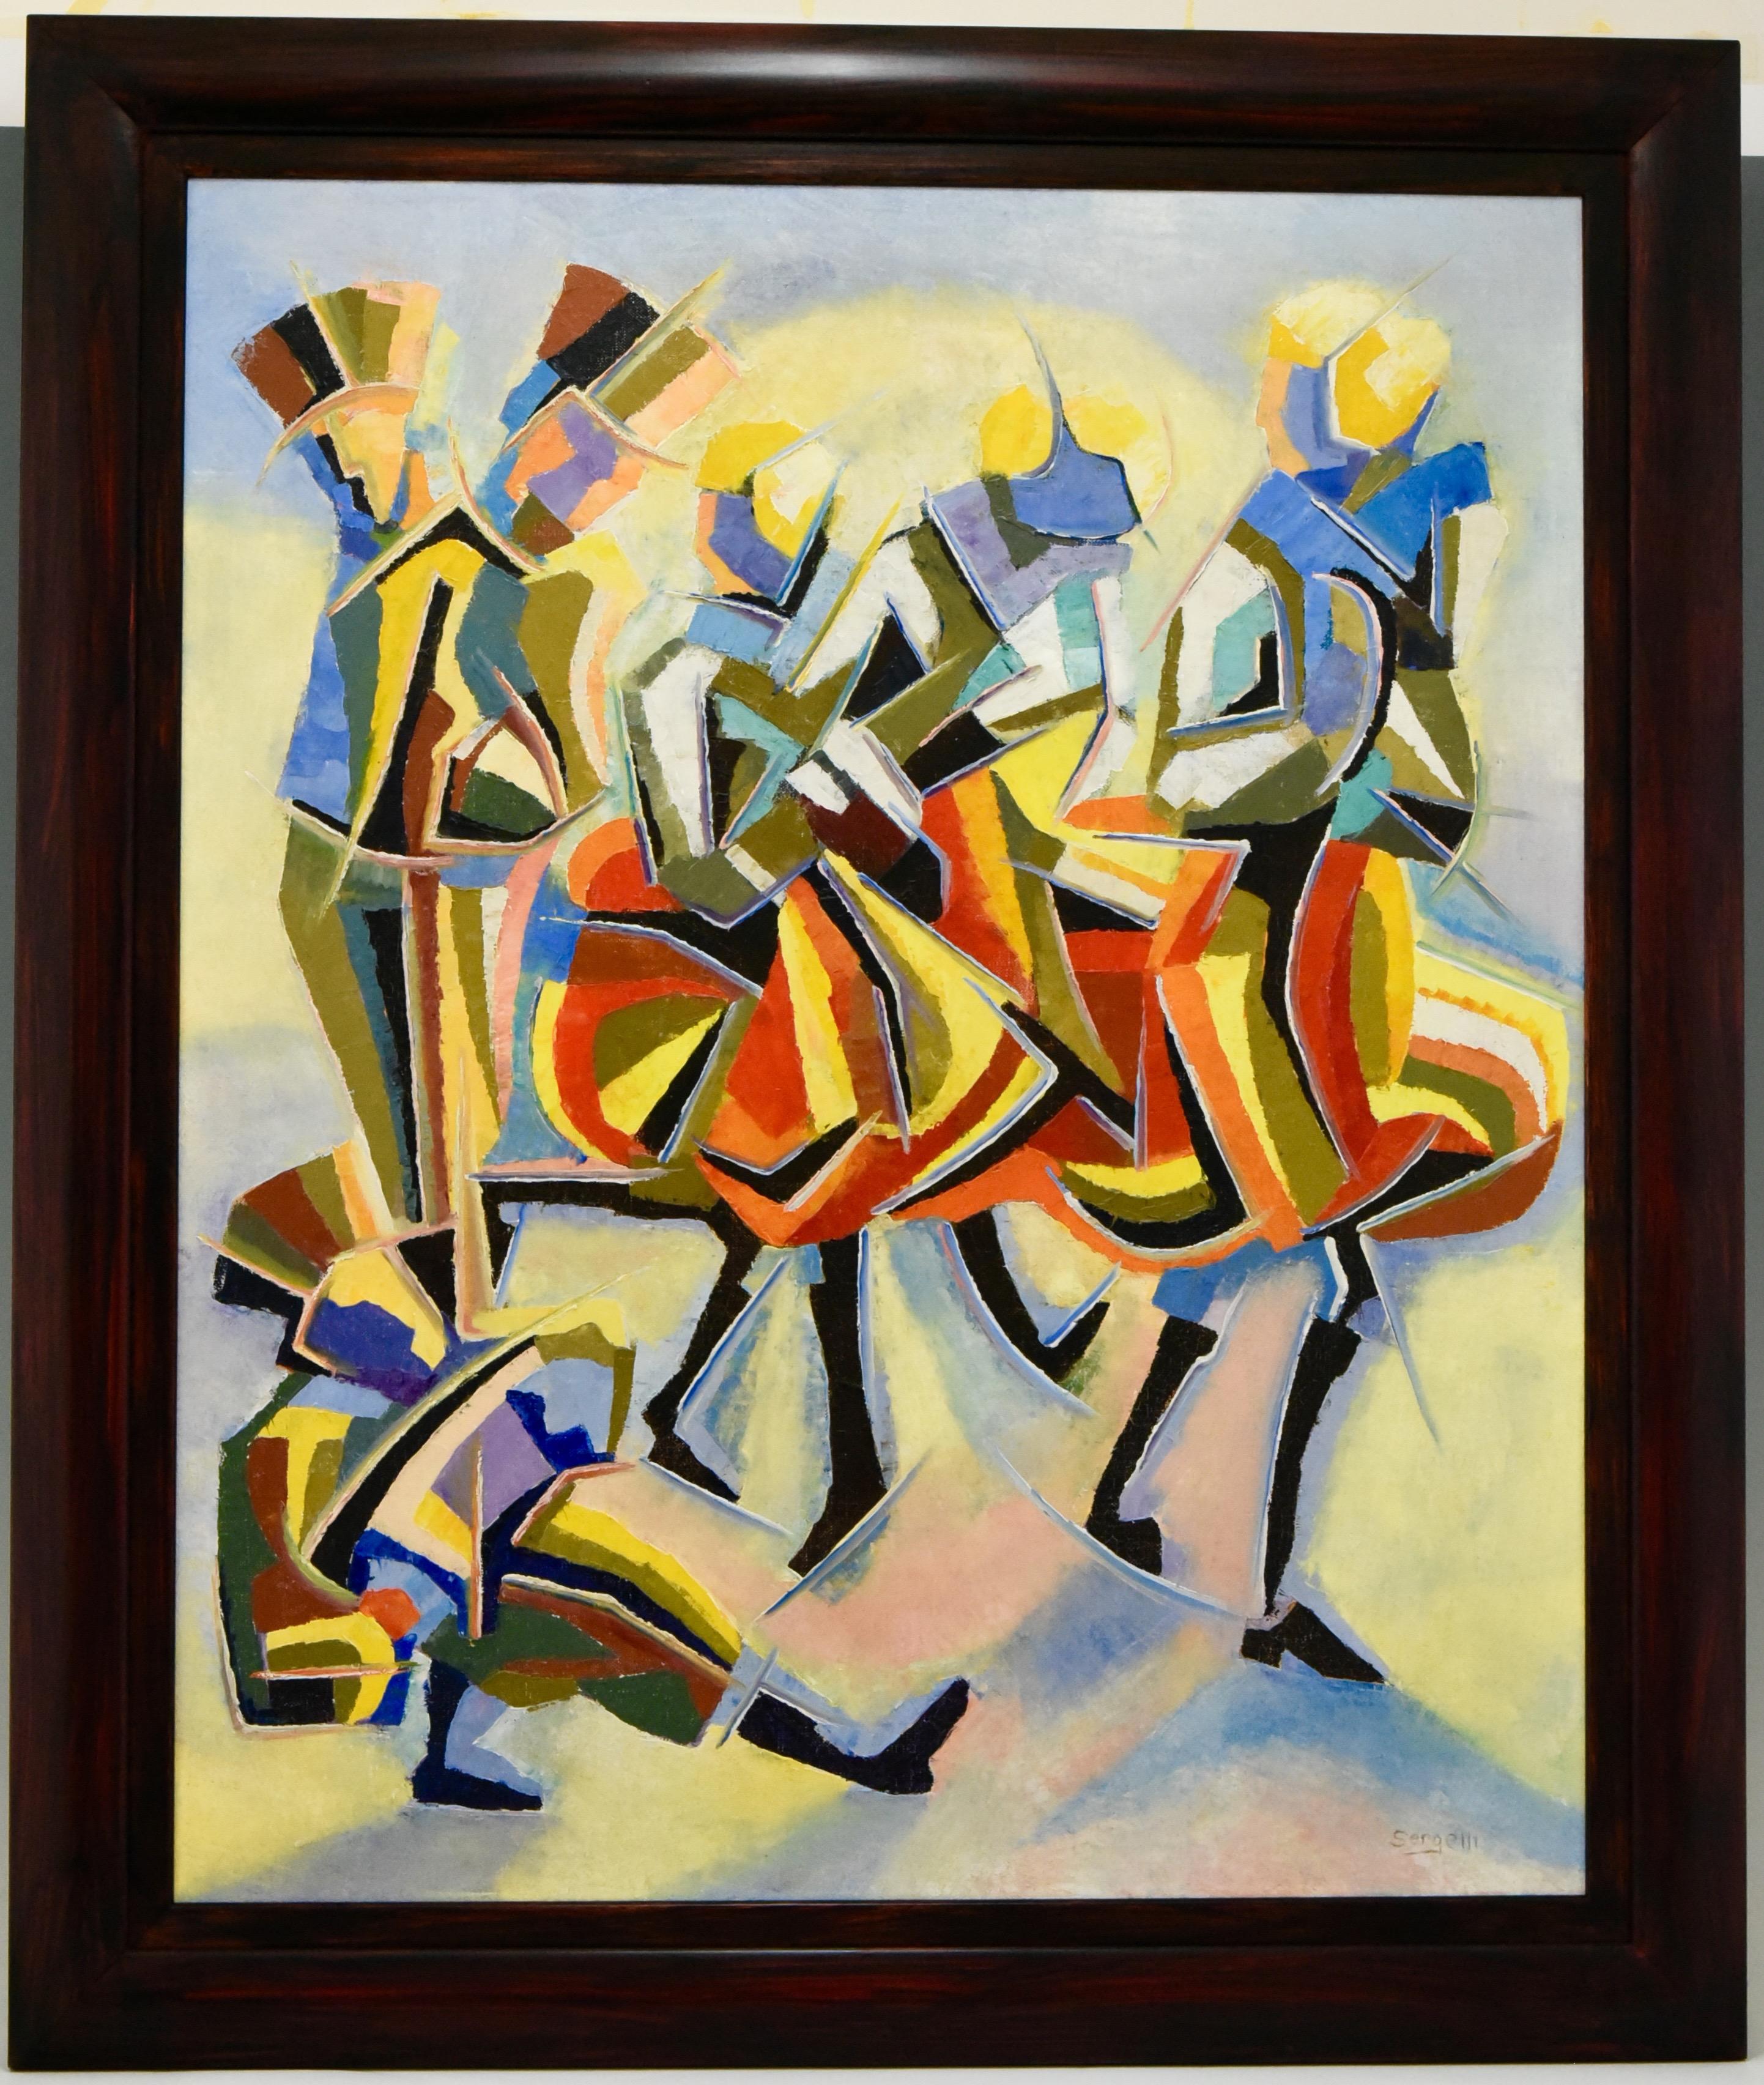 Colorful Post-Cubist oil painting of dancers and musicians by 
Serge Magnin, born in France 1934. 

Literature:
Serge Magnin, Peintre du mouvement. ?Régis Bernard. ?
 
Size of the frame: 
H. 86 cm x L. 73 cm. x W. 3 cm.
H. 33.9 inch x L.28.8